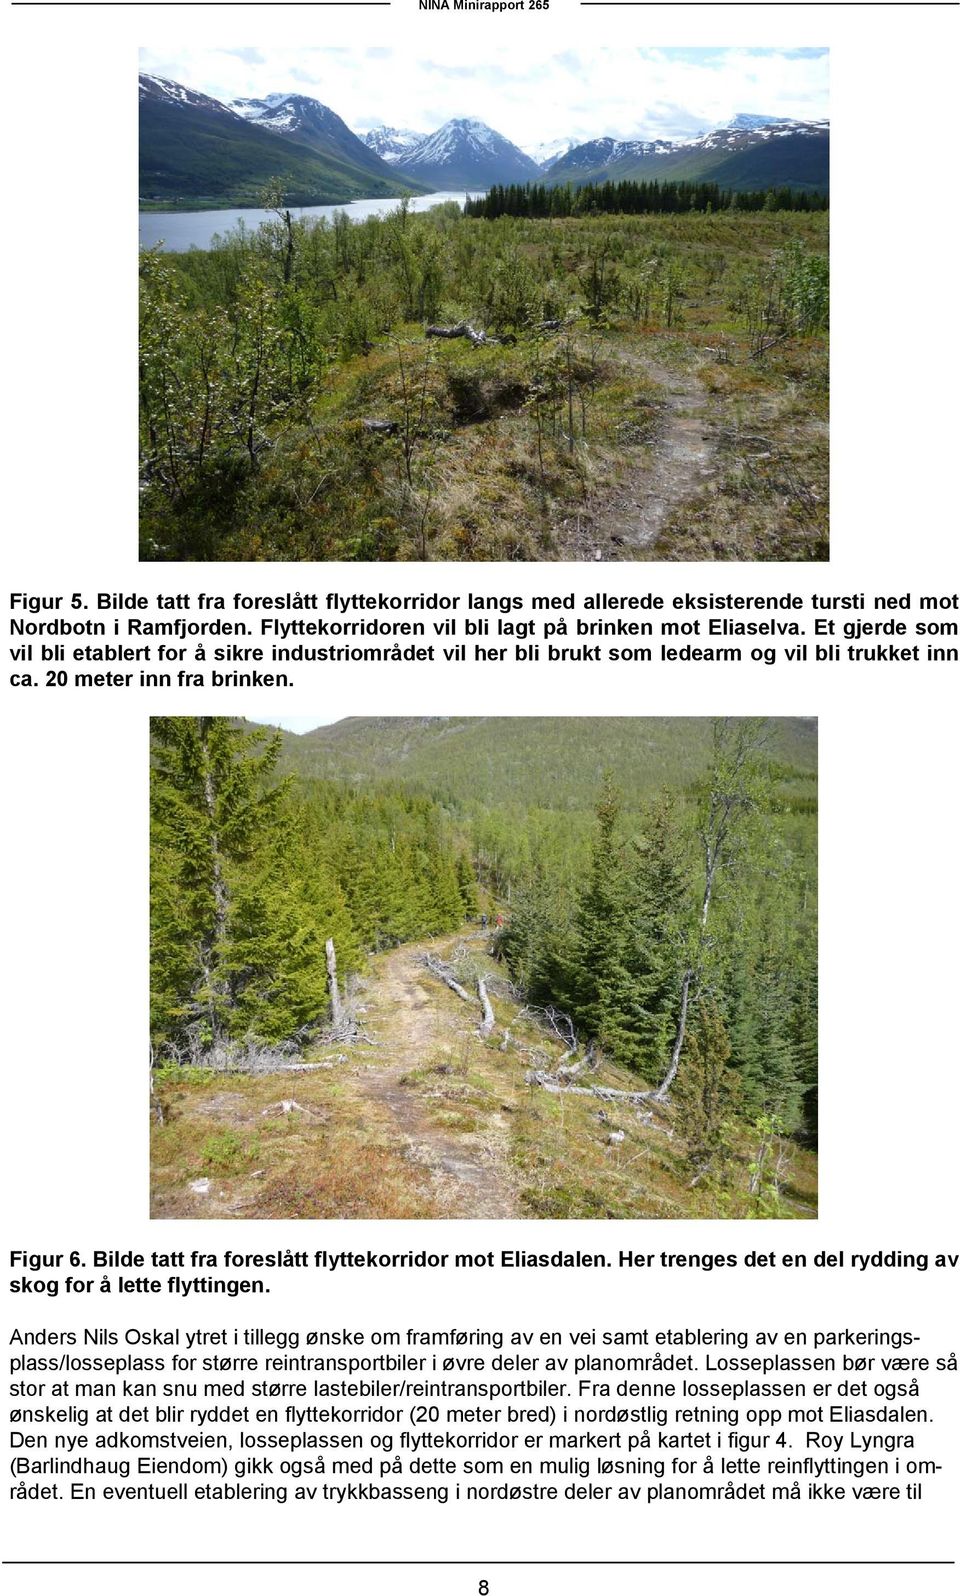 Bilde tatt fra foreslått flyttekorridor mot Eliasdalen. Her trenges det en del rydding av skog for å lette flyttingen.